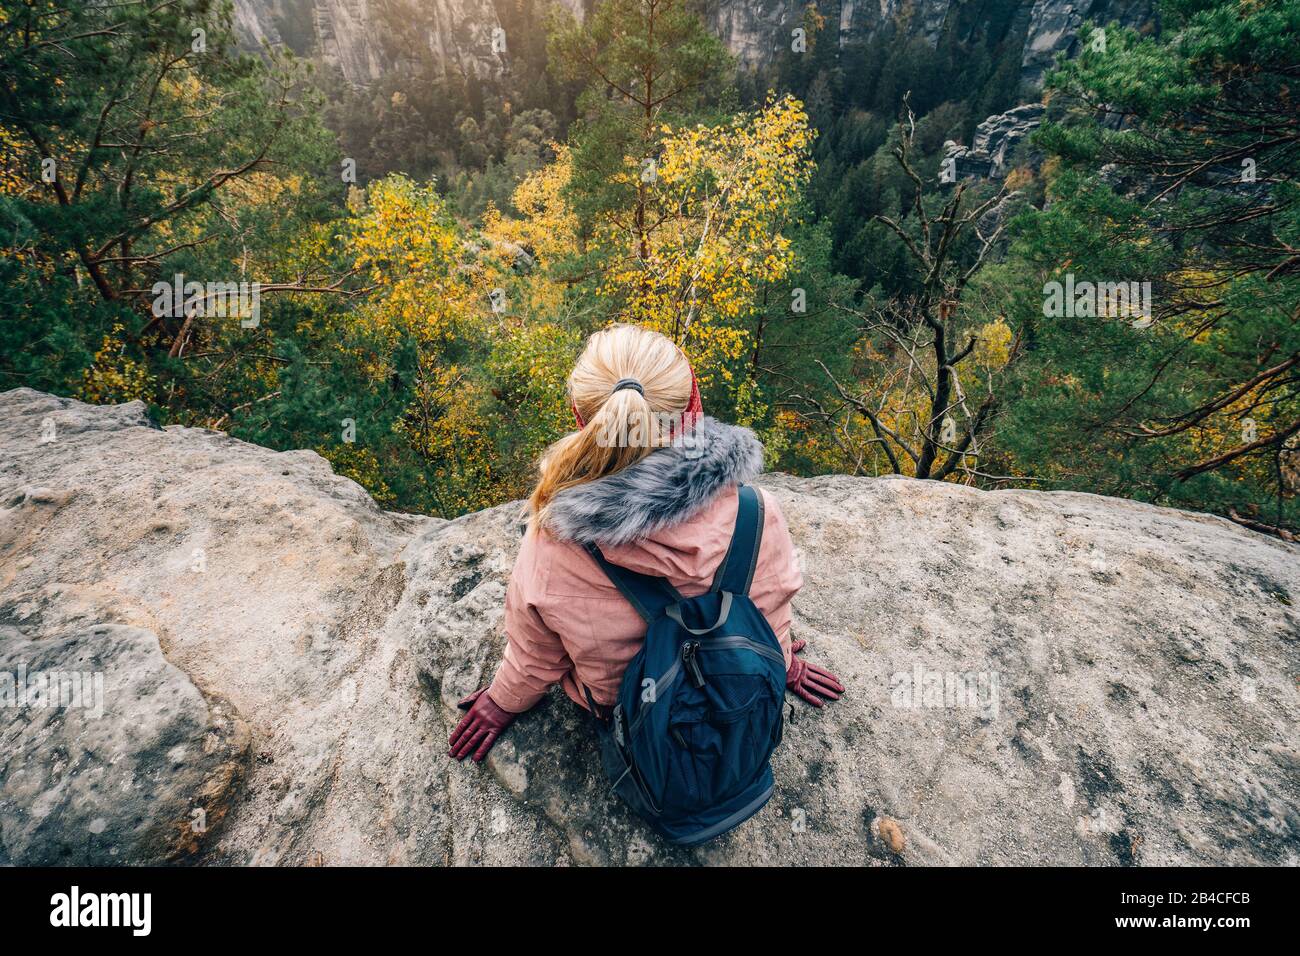 Biondo Frau in winterlicher Kleidung mit zaino, sitzt am Rand einer Felsklippe, Reise-Lifestyle-Konzept Foto Stock